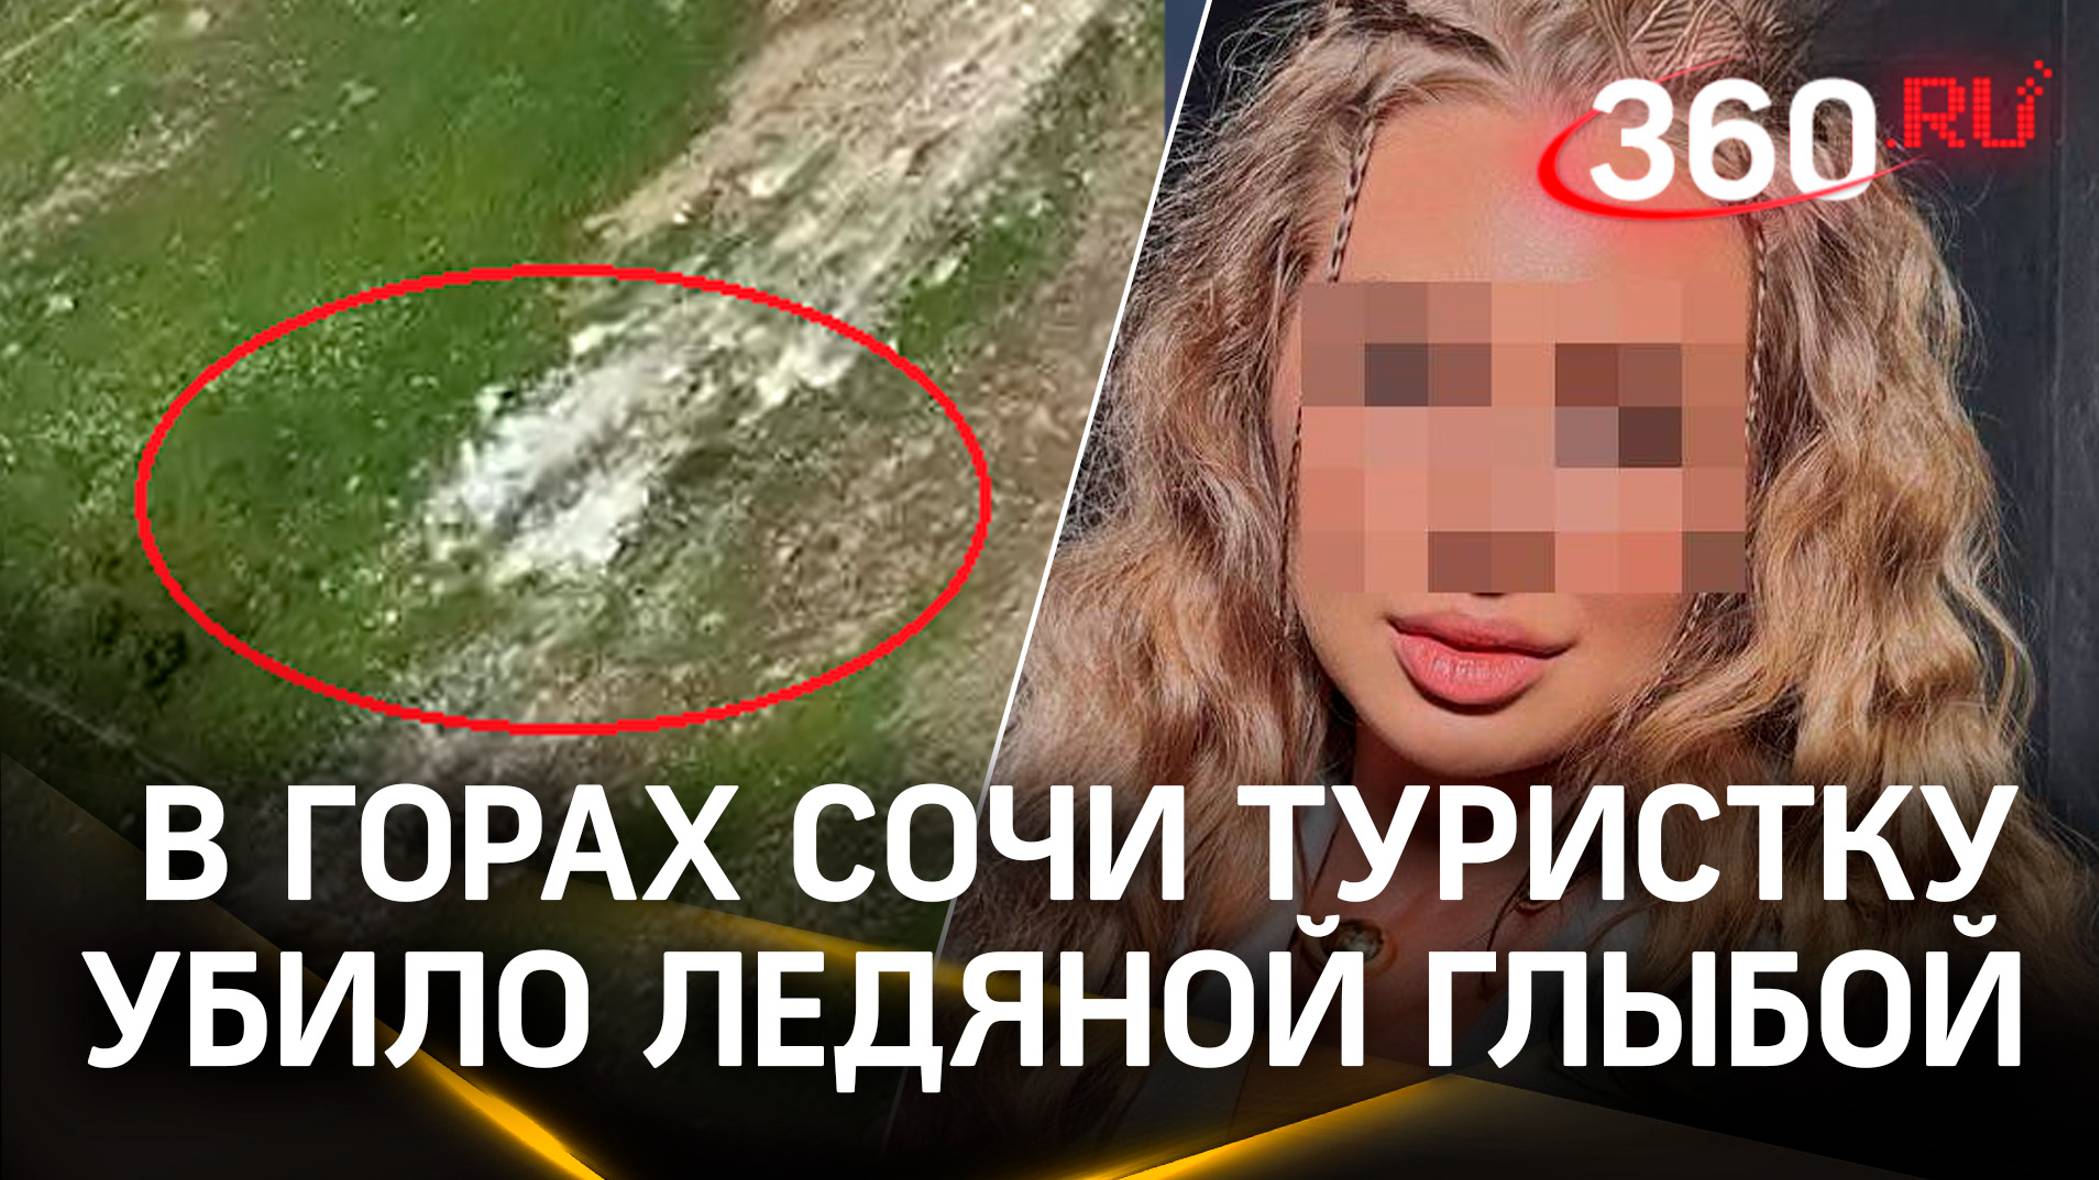 Видео: ледяная глыба убила девушку на глазах матери в Сочи